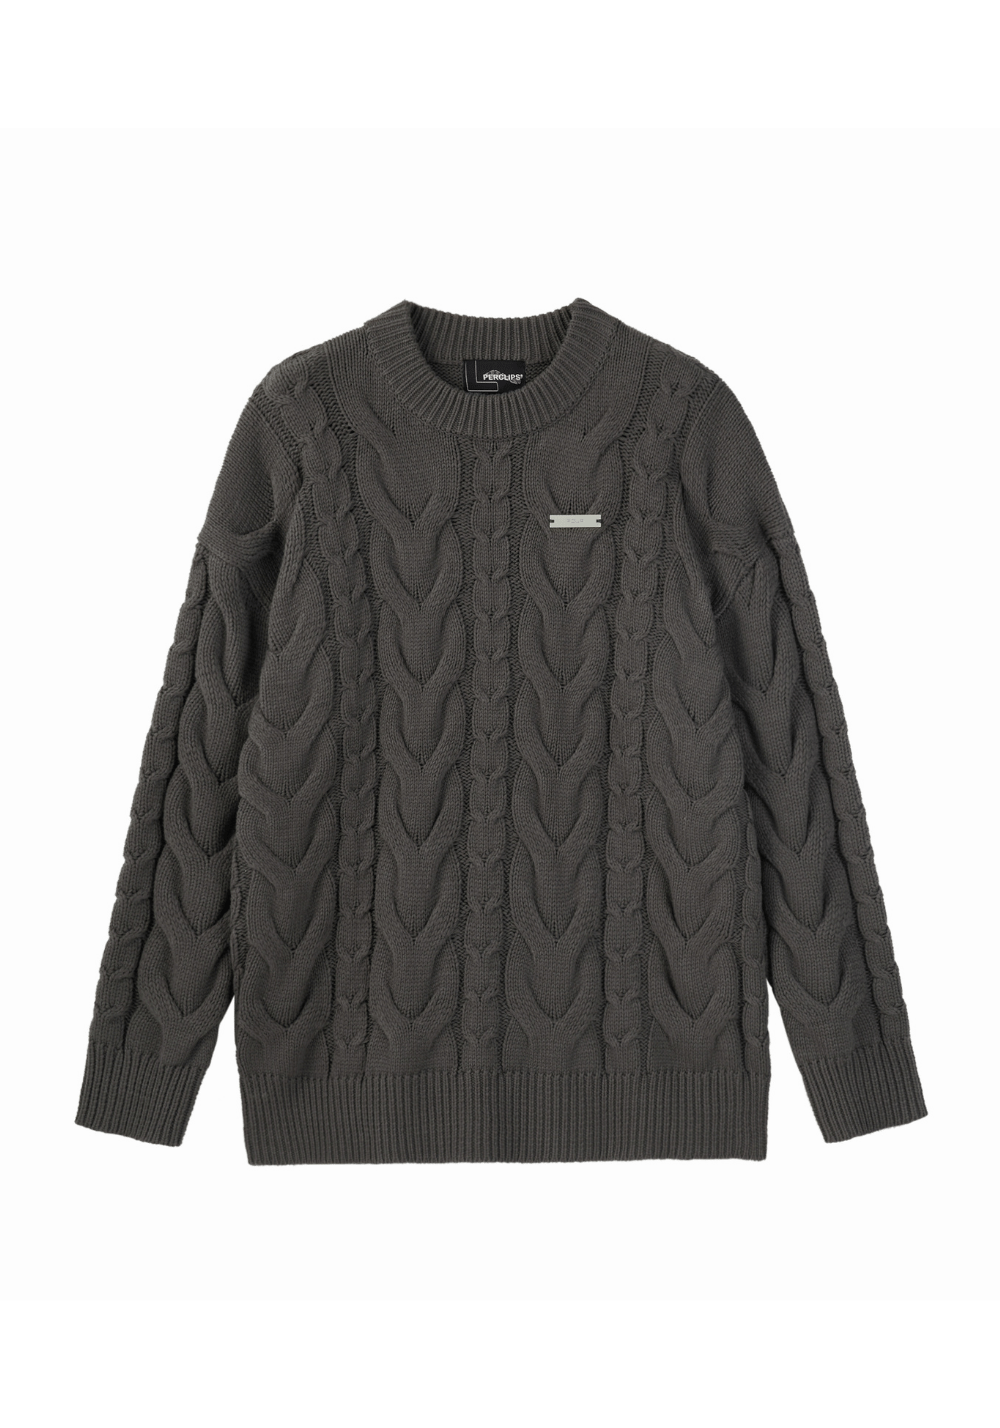 Twist Texture Striped Sweater - PSYLOS 1, Twist Texture Striped Sweater, Sweater, PCLP, PSYLOS 1